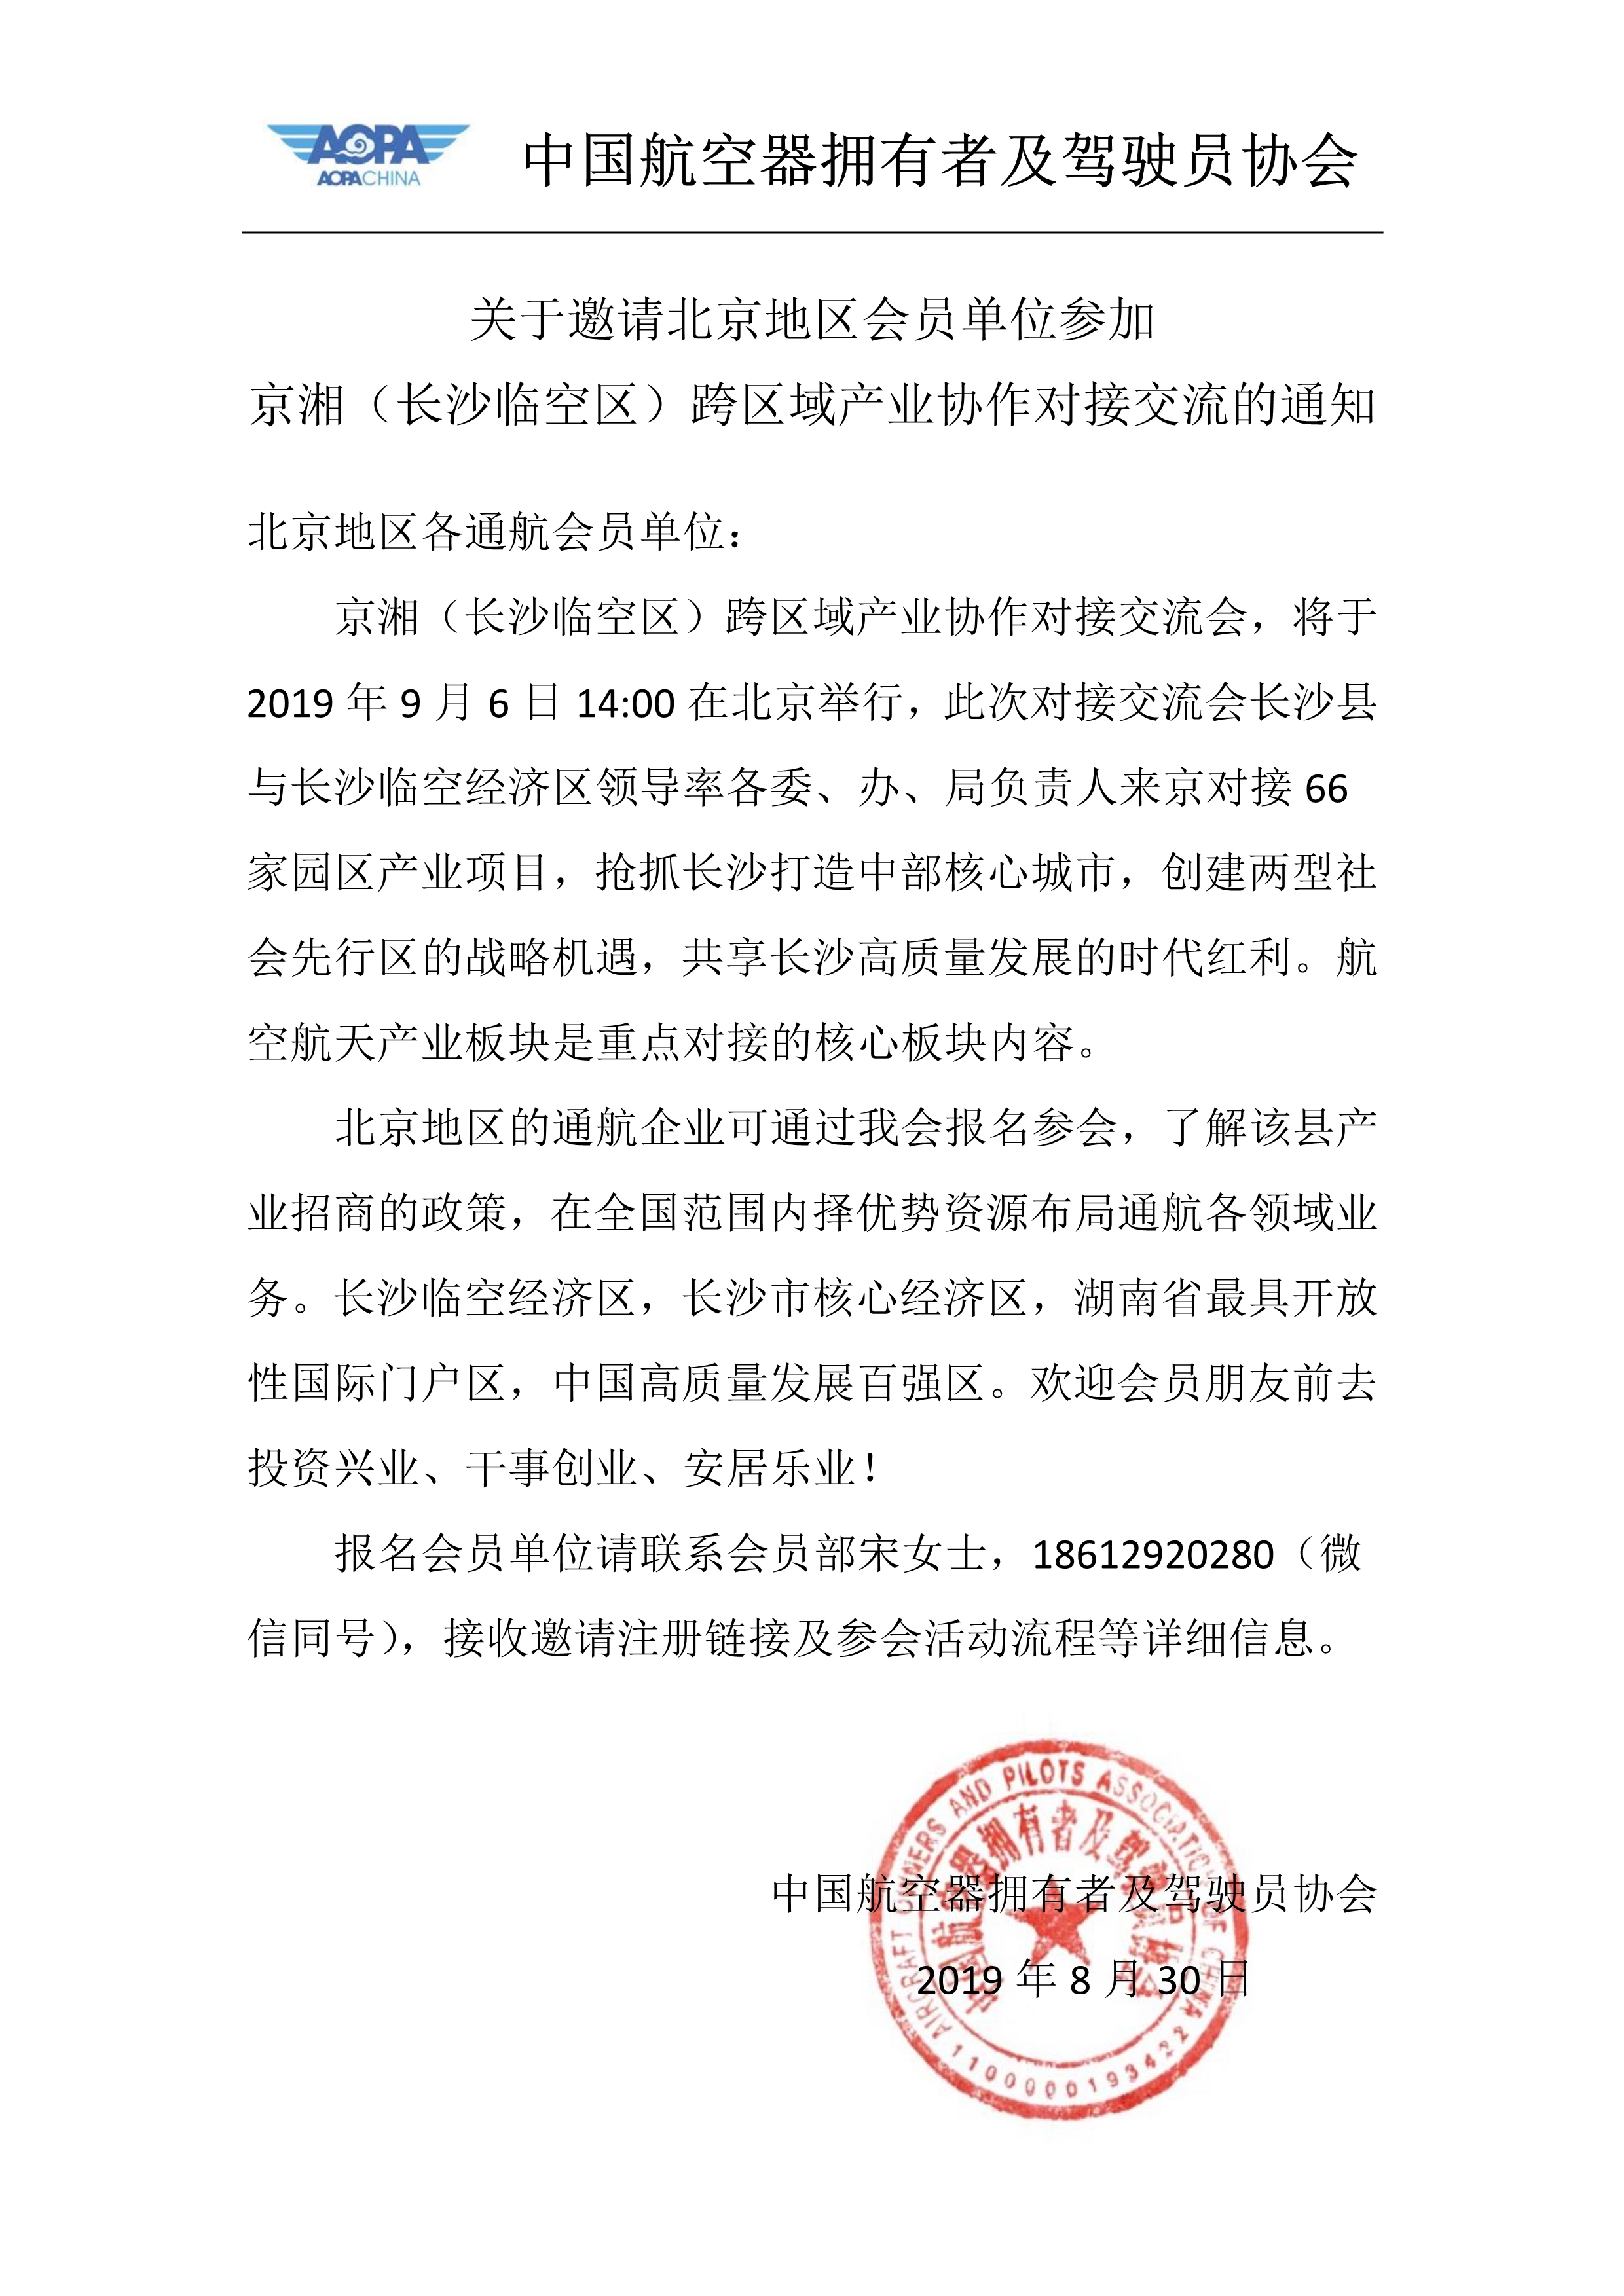 083014205199_0于邀请北京地区单位会员关于邀请北京地区会员单位参加京湘长沙临空区跨区域产业协作对接交流的通知_1.Jpeg